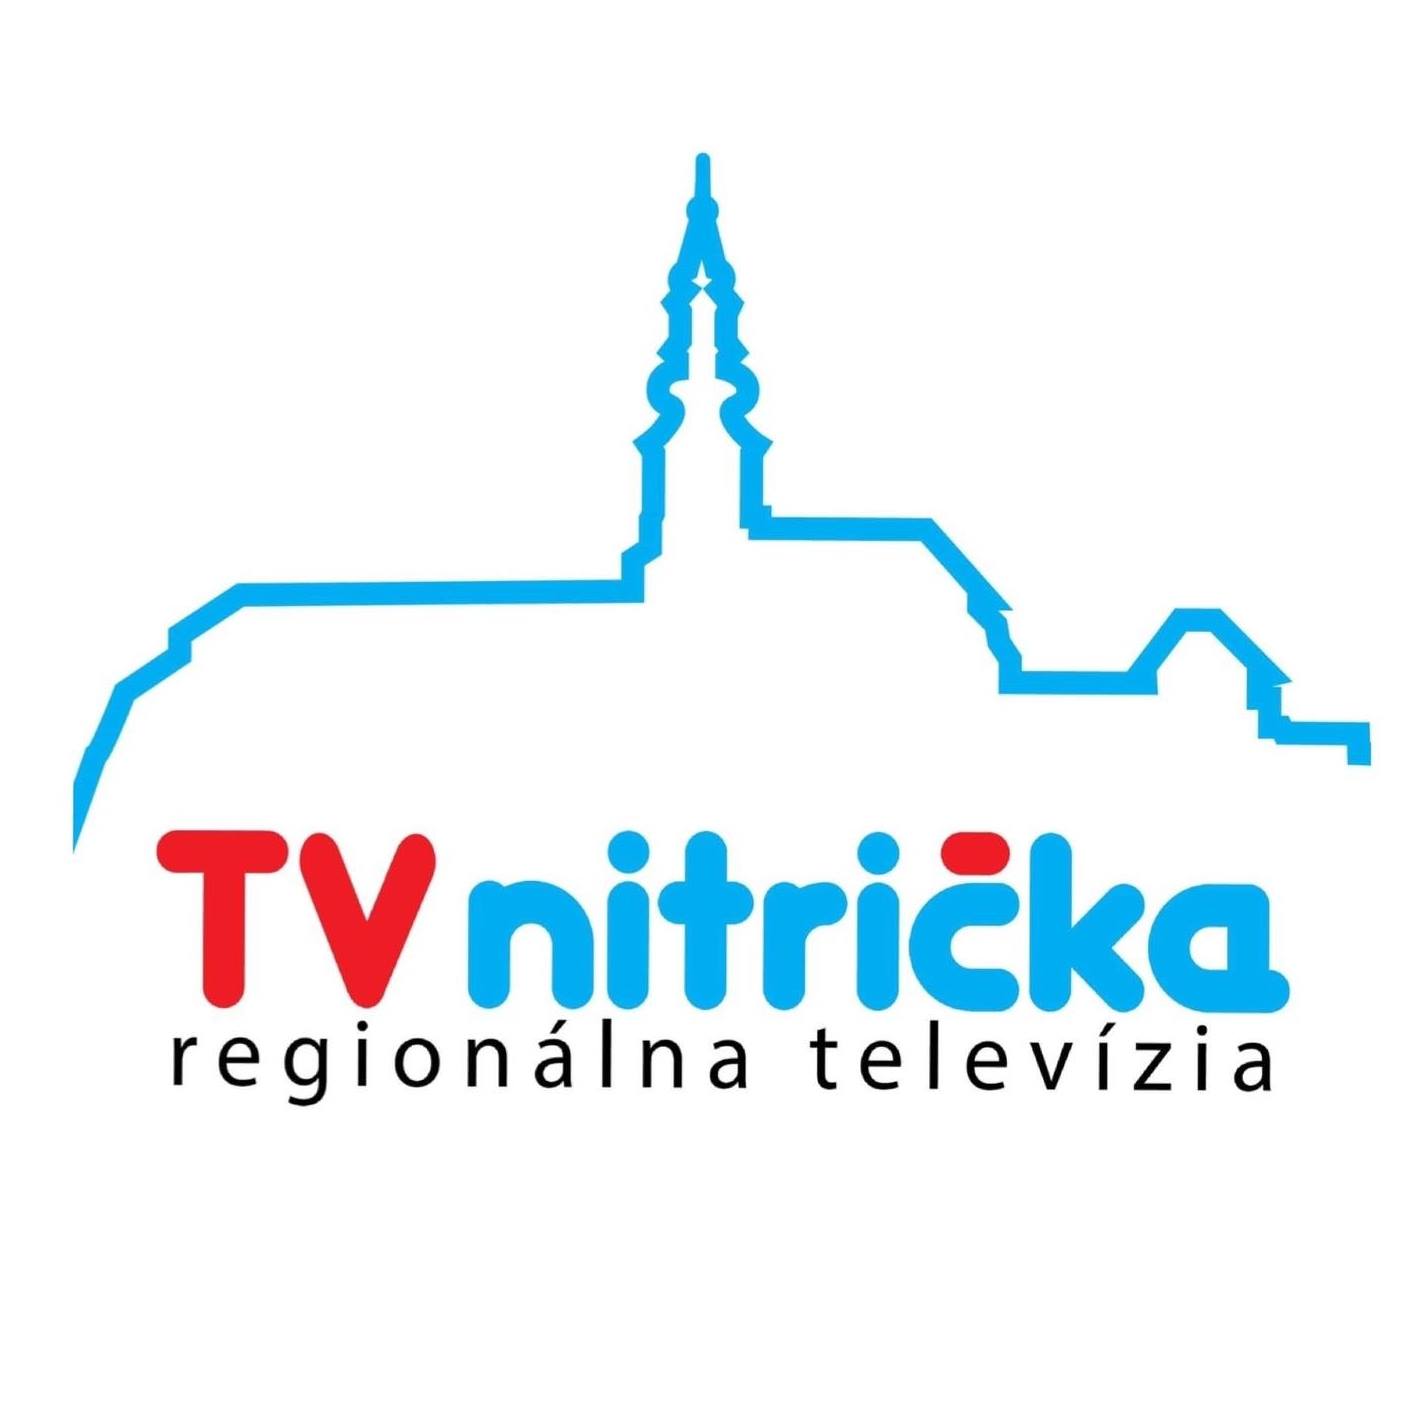 TV Nitricka